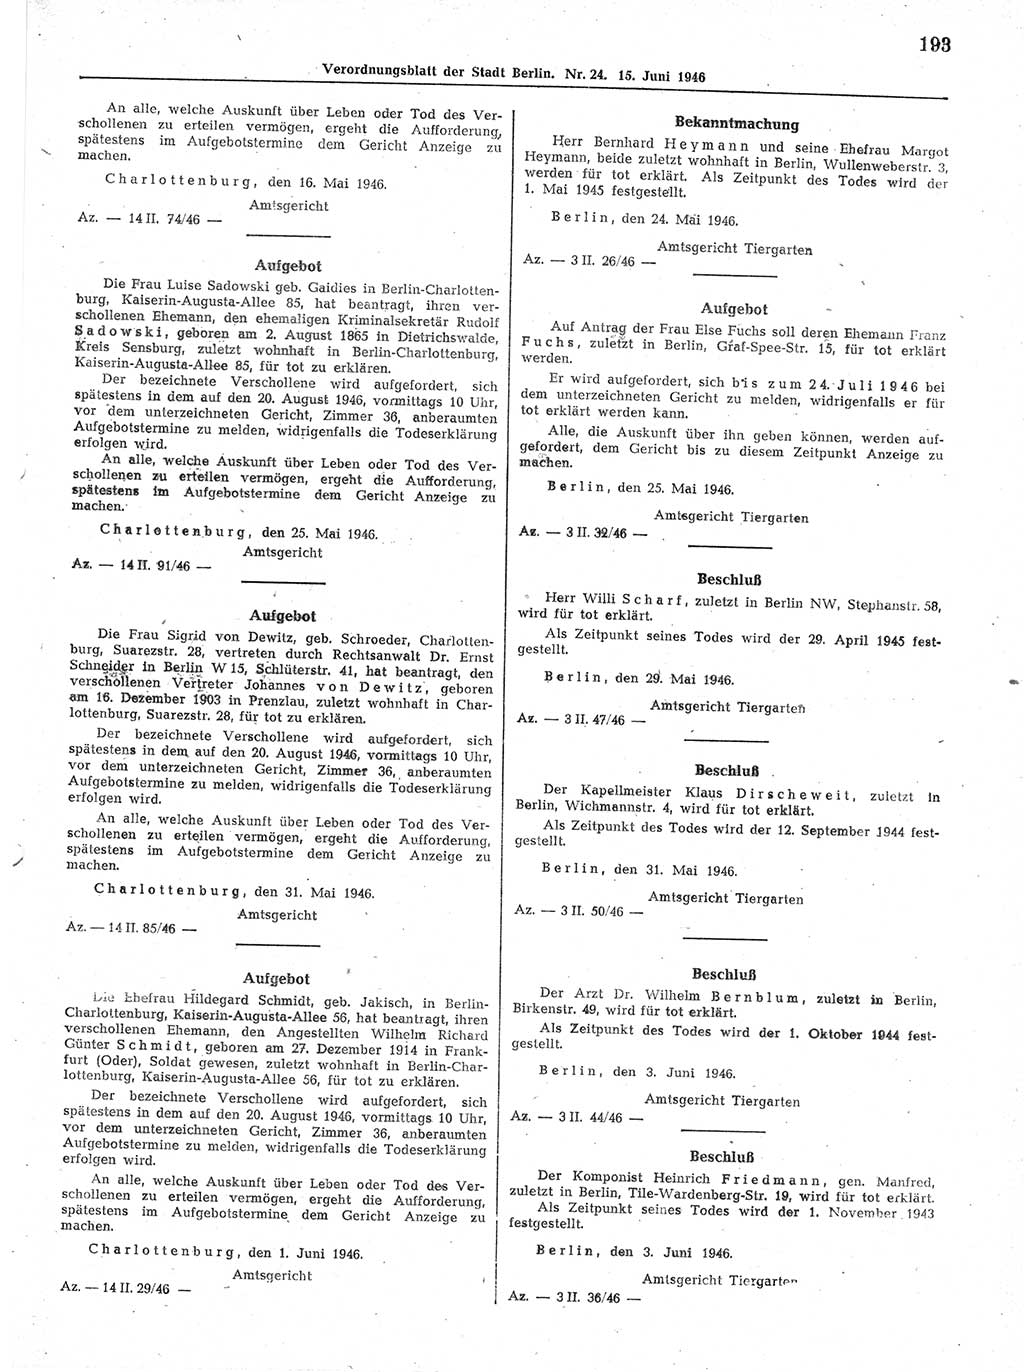 Verordnungsblatt (VOBl.) der Stadt Berlin, für Groß-Berlin 1946, Seite 193 (VOBl. Bln. 1946, S. 193)